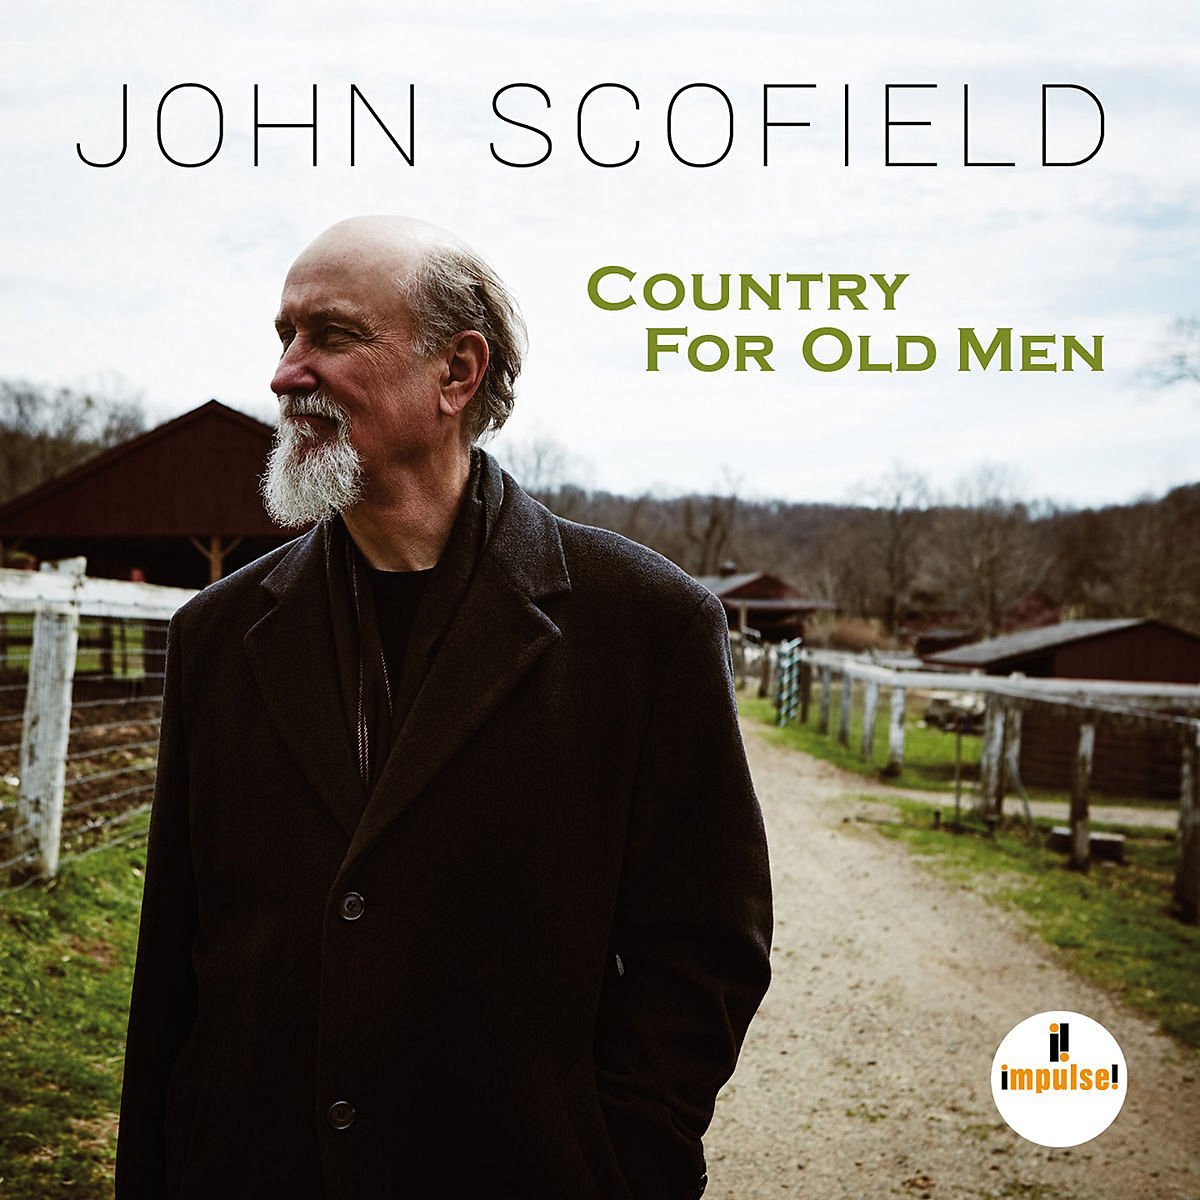 John Scofield - Country For Old Men (2016) [HDTracks FLAC 24bit/96kHz]